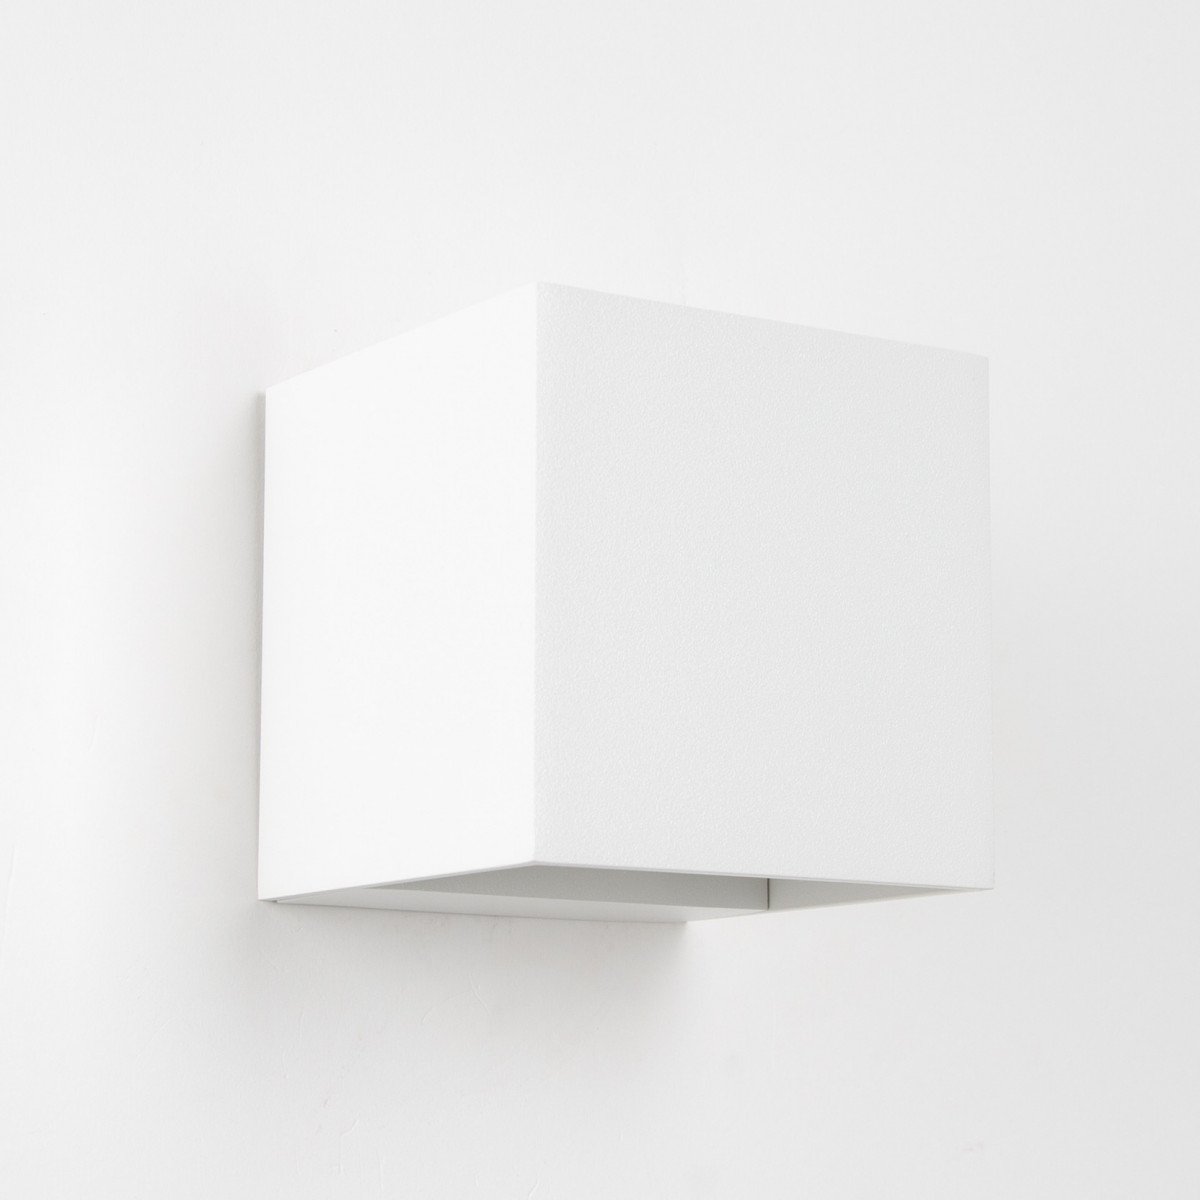 Binnenverlichting Shift up en downlighter muurlamp met modern design in witte kleur